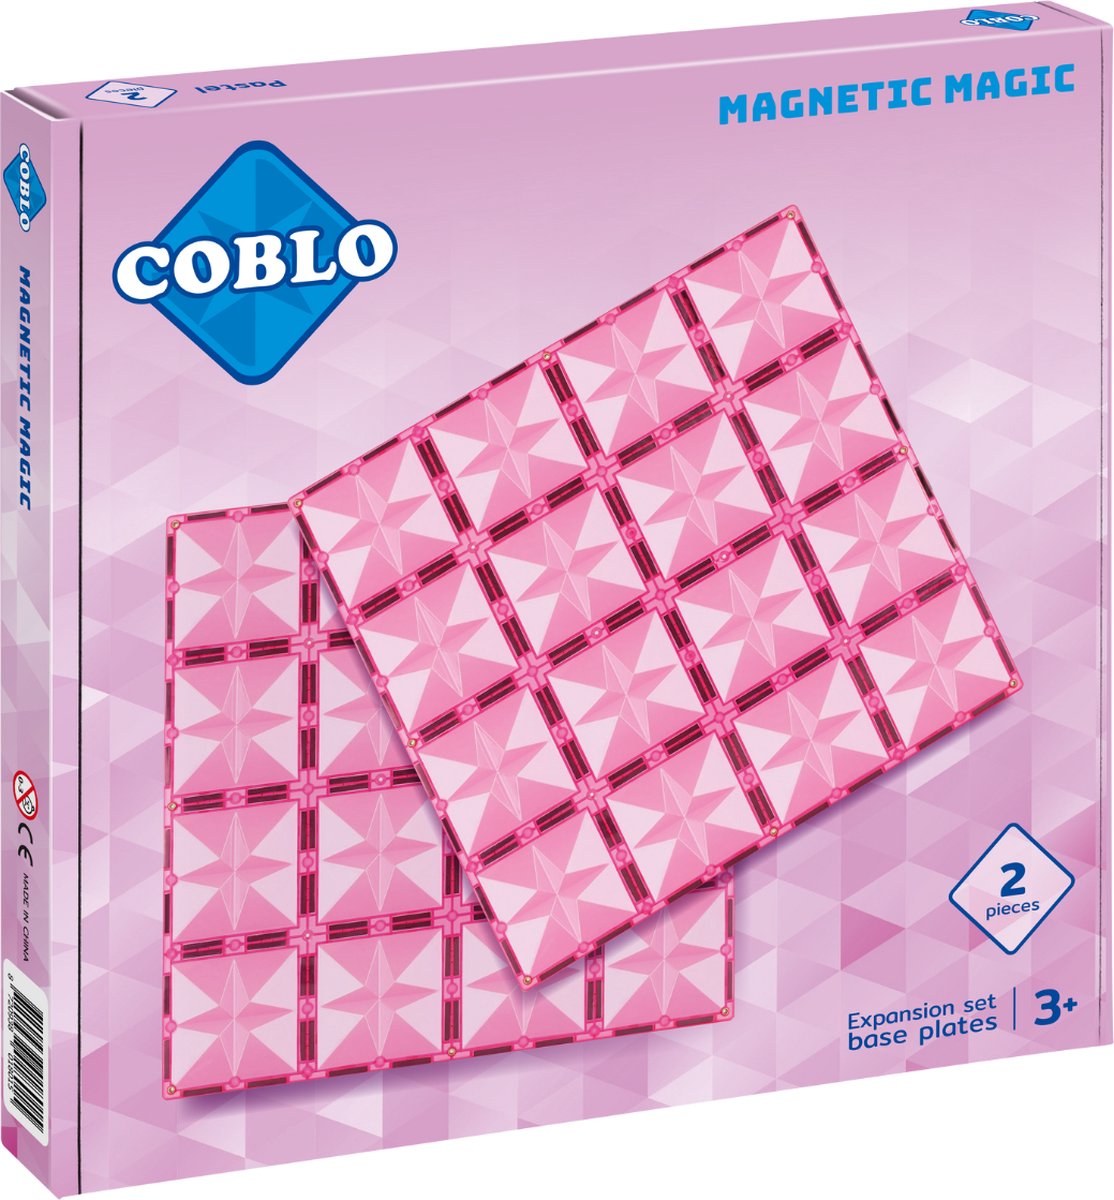 Coblo Pastel - Basisplaten - 2 stuks - Magnetisch speelgoed - Montessori speelgoed